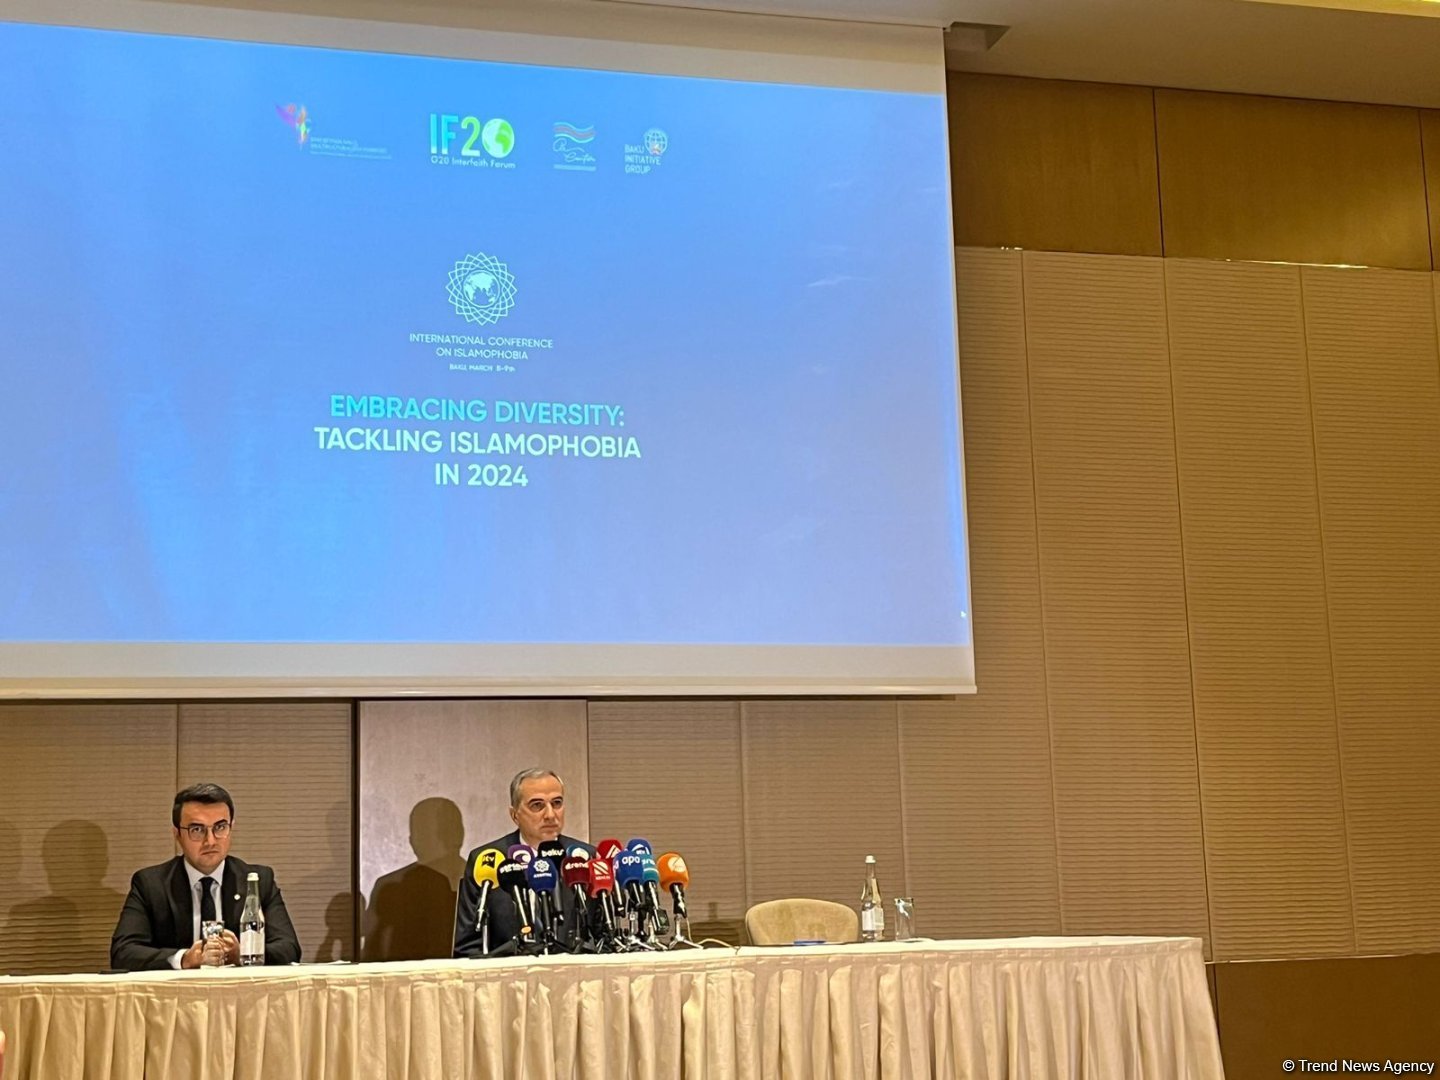 В Баку пройдет международная научная конференция "Сохранение разнообразия: борьба с исламофобией в 2024 году"